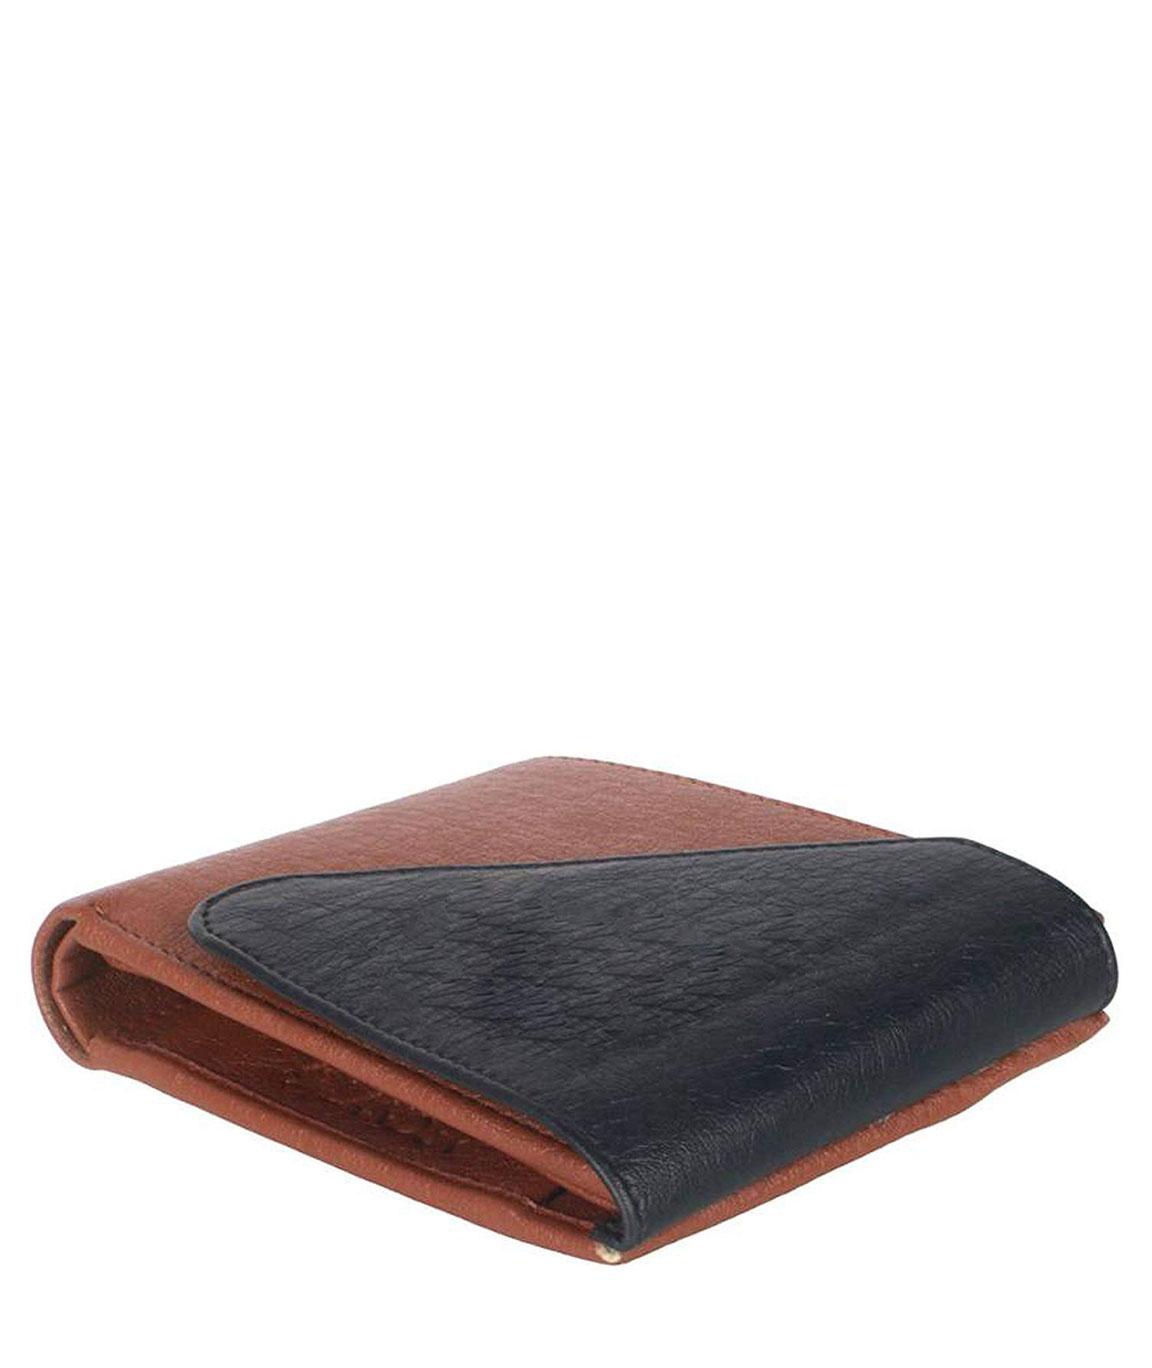 Brown OEM Designer Gents Leather Wallet, Size: 4.5